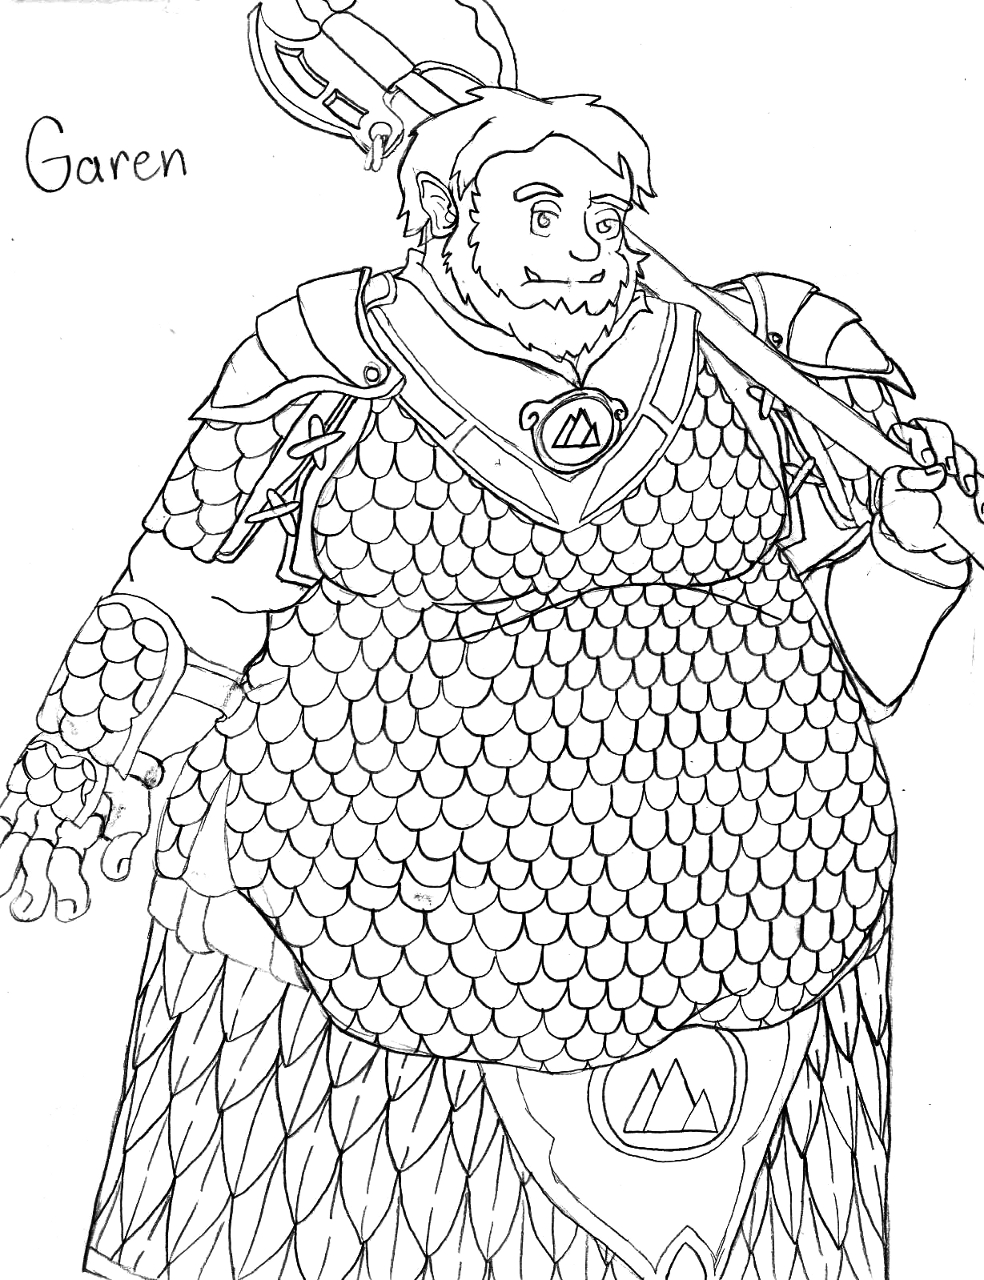 Garen, the Half Orc